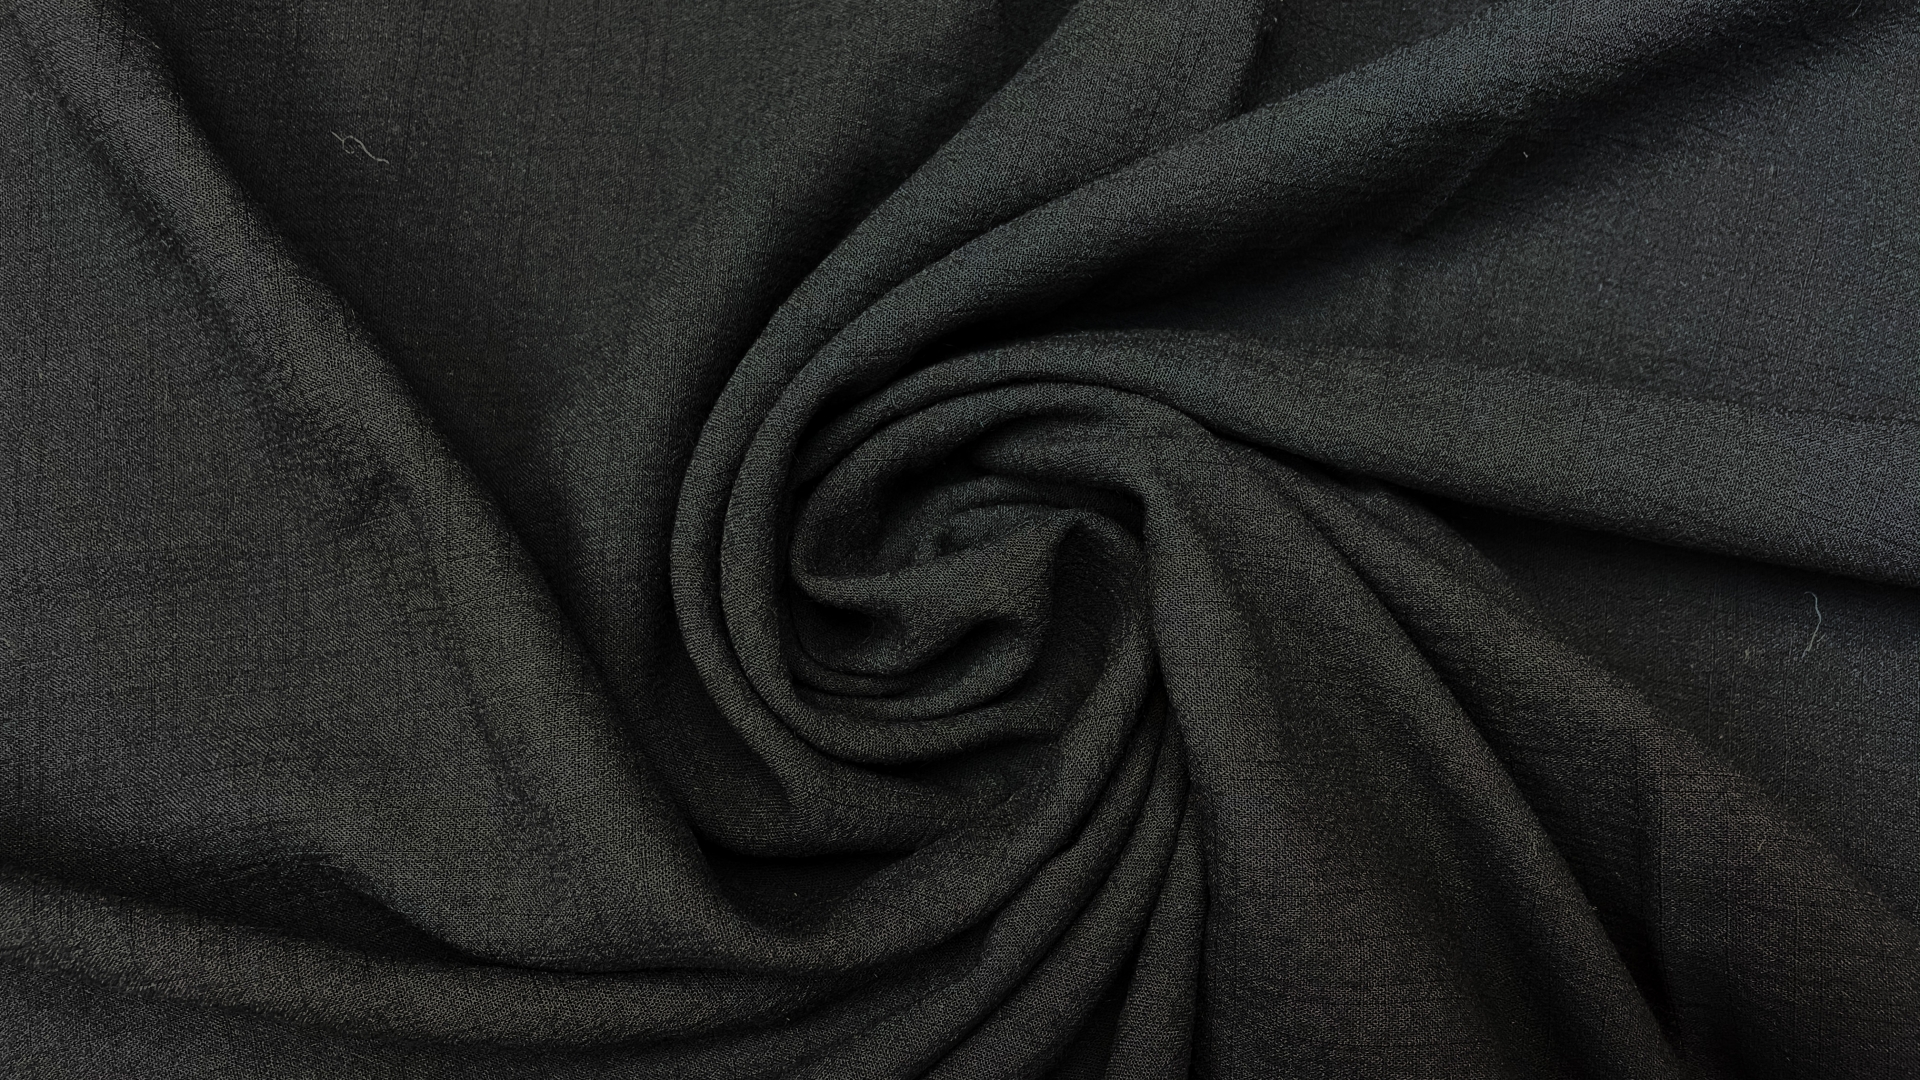 Марлёвка в чёрном цвете из шерсти с добавлением вискозы. Полотно шероховатое, полупрозрачное, рыхлое. Отлично подойдет для пошива платьев, рубашек, в том числе для пошива домашней одежды.